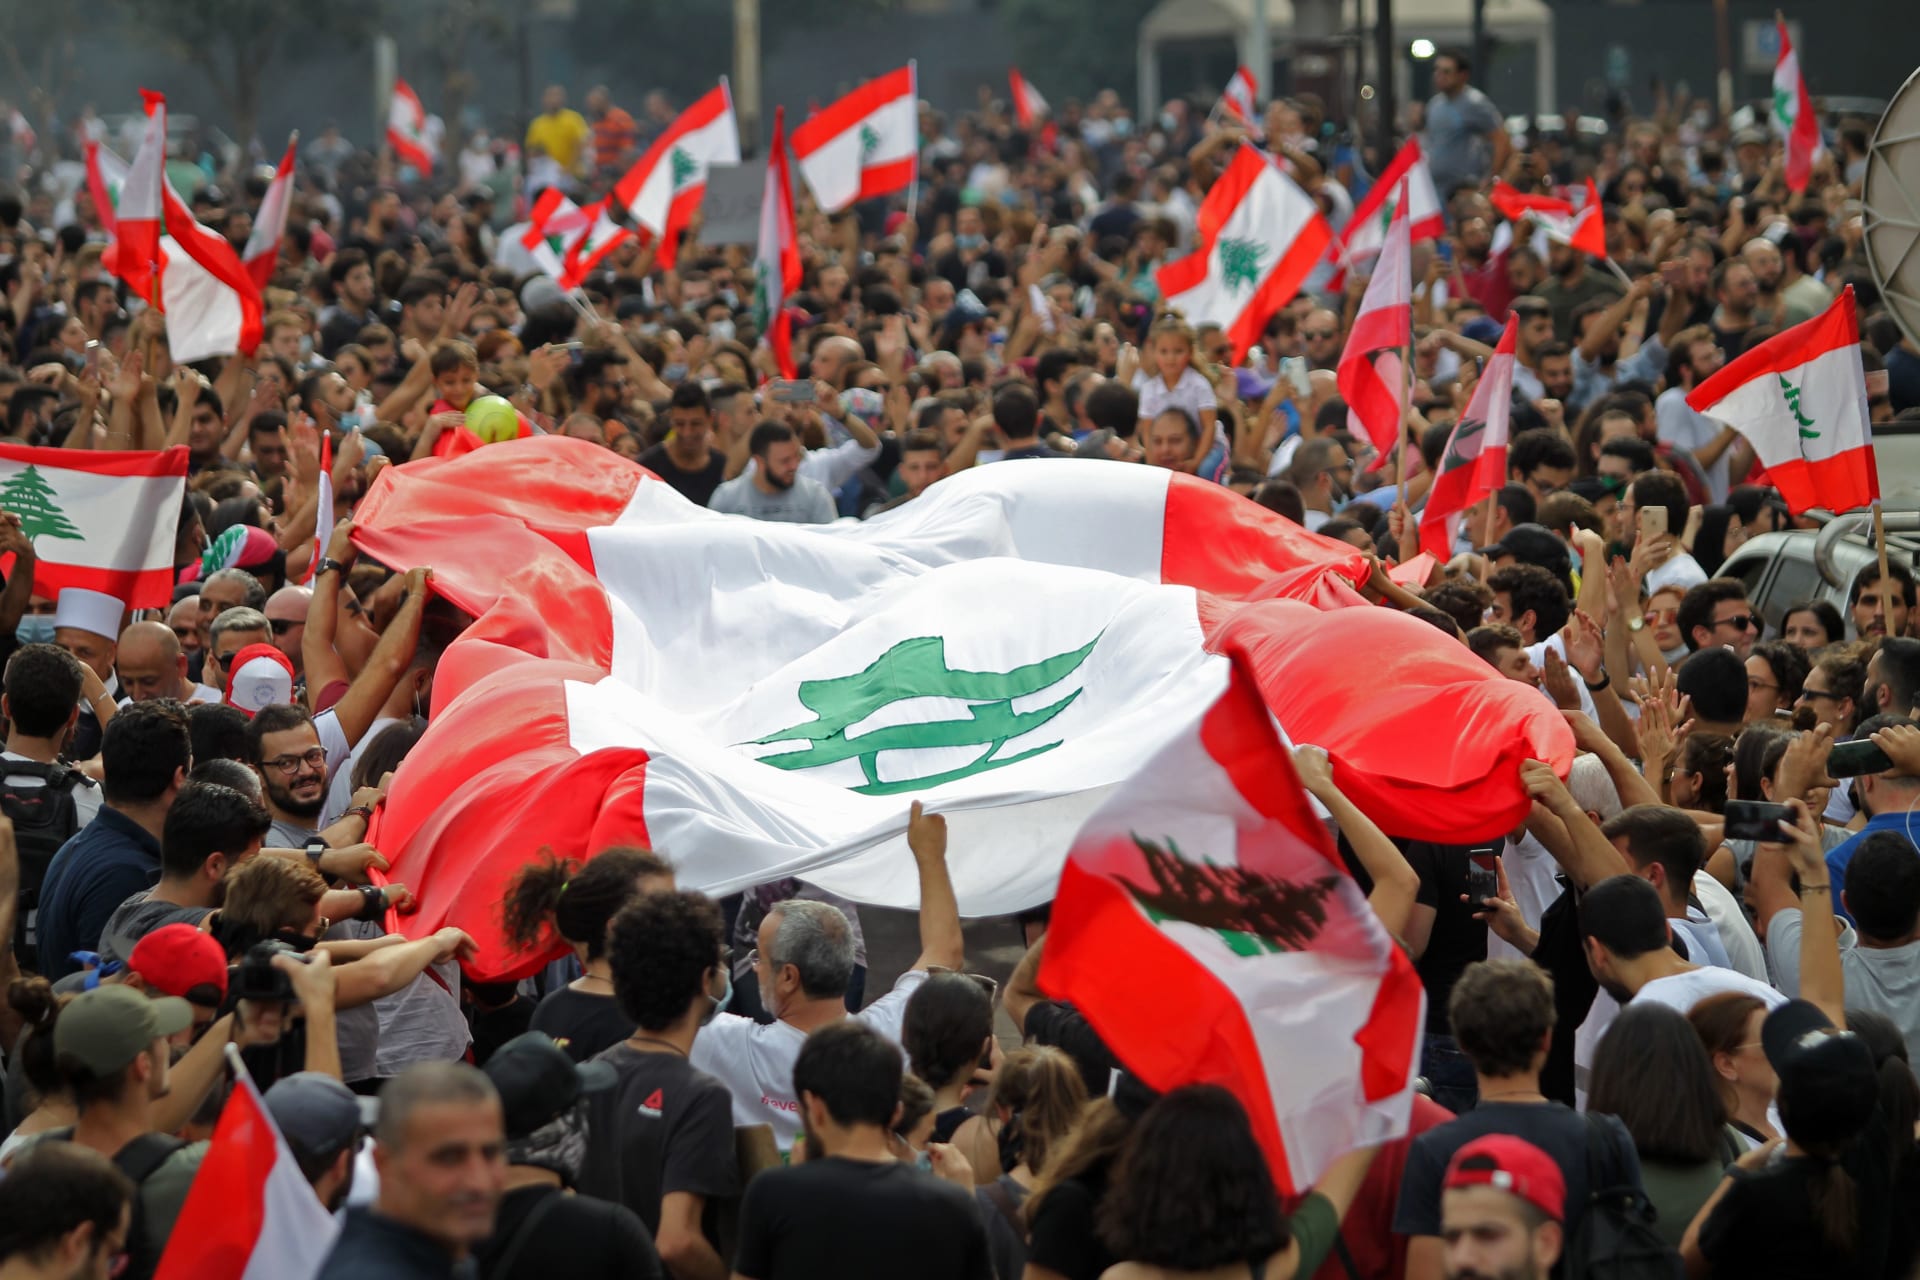 بالصور.. الآلاف في مظاهرات تطالب بـ"إسقاط النظام" في لبنان 